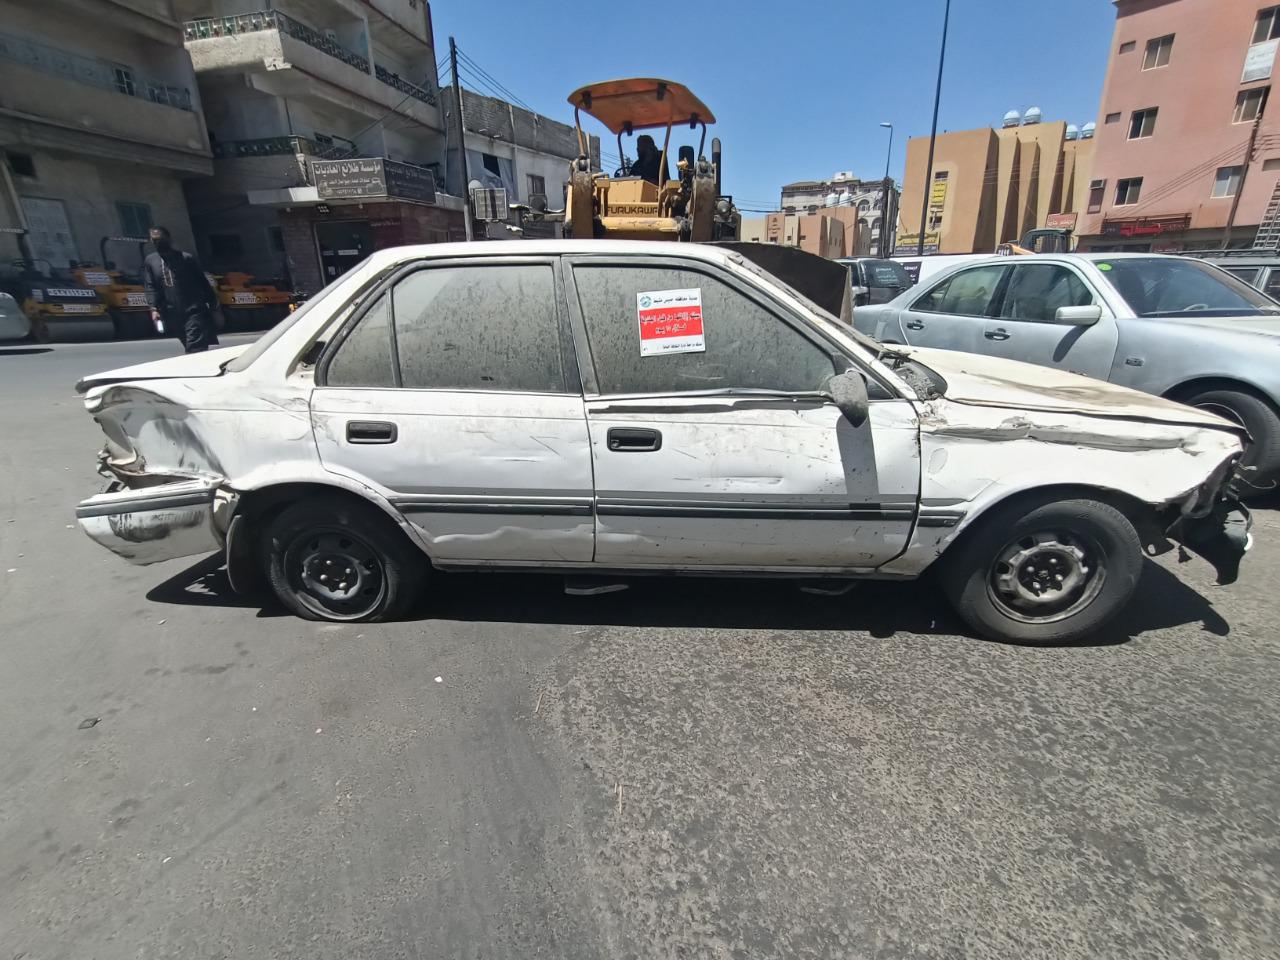 بلدية خميس مشيط تزيل اكثر من 600 سيارة مهملة وتالفة